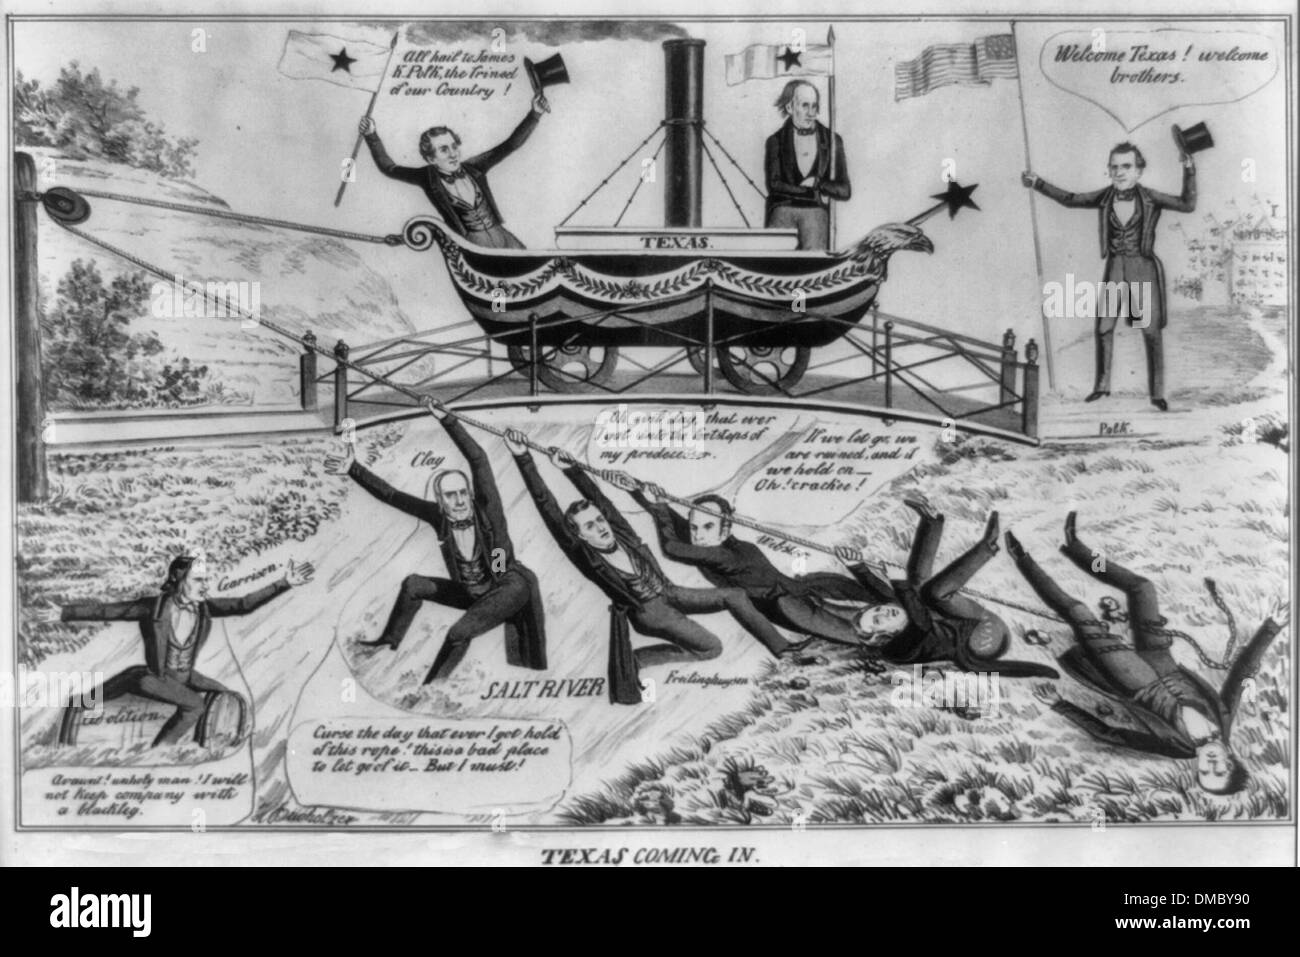 En venant du Texas - USA Caricature politique, vers 1844 Banque D'Images